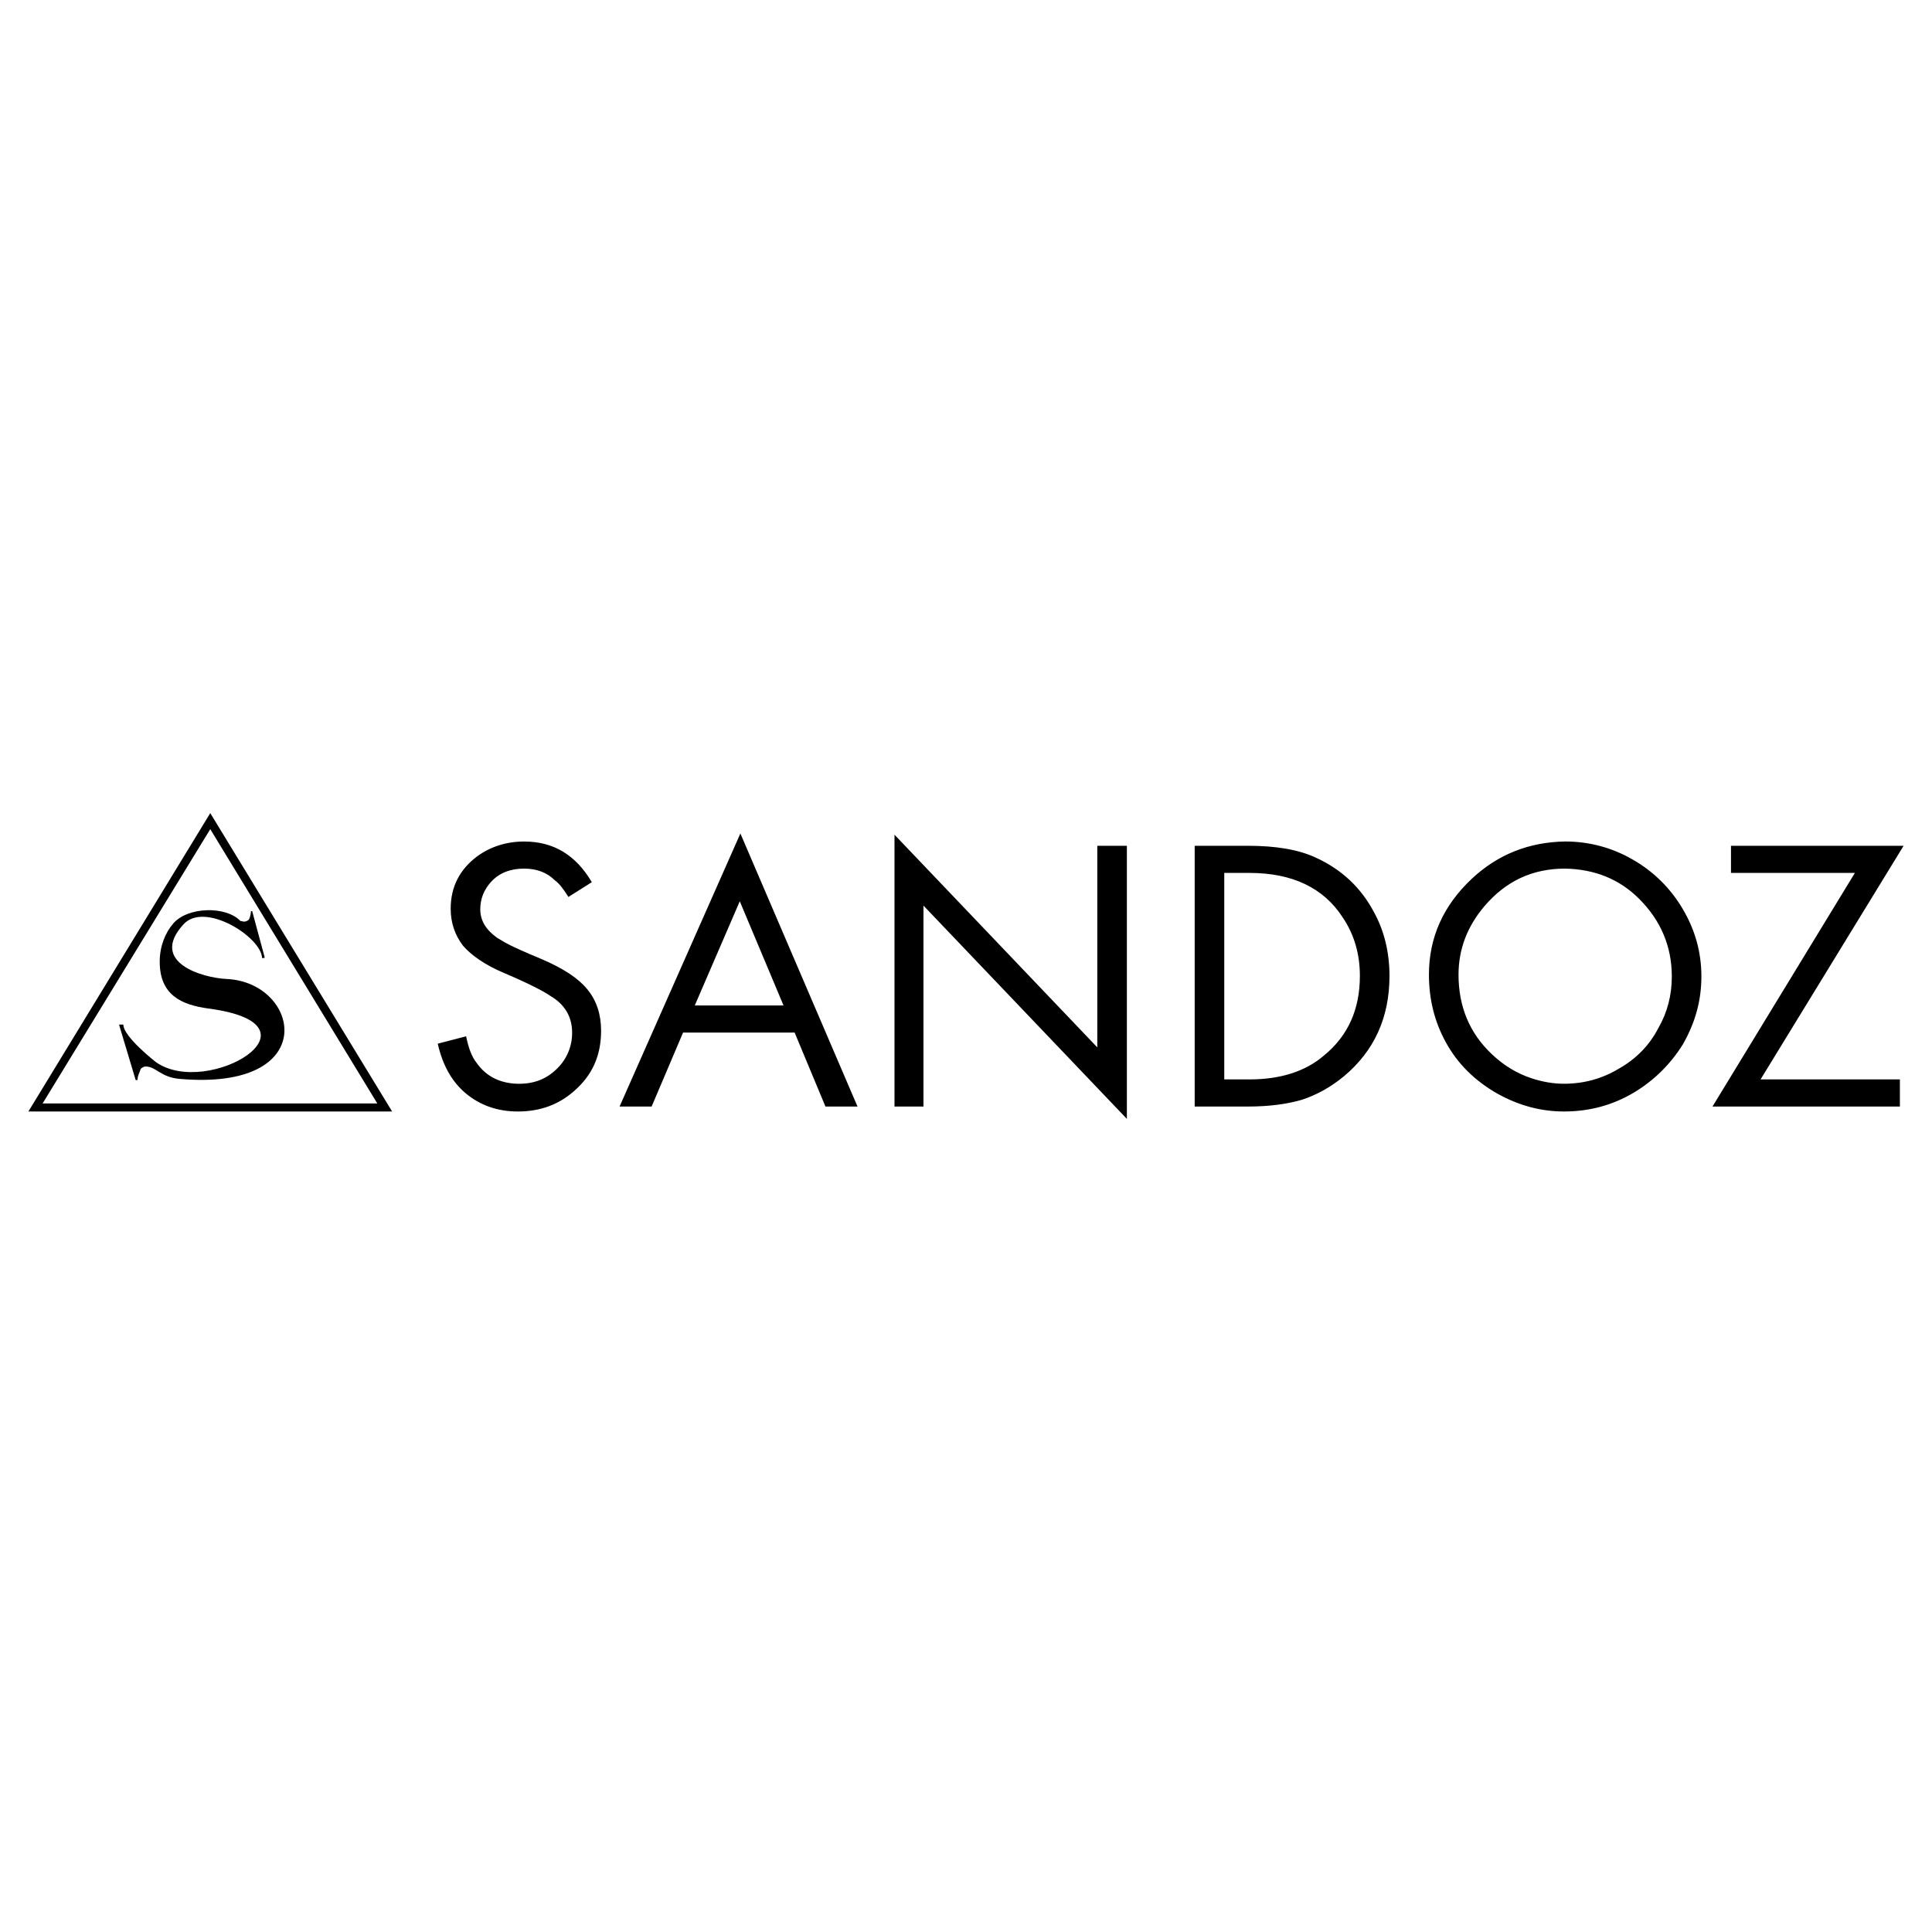 Cliente de SANDOZ S/A